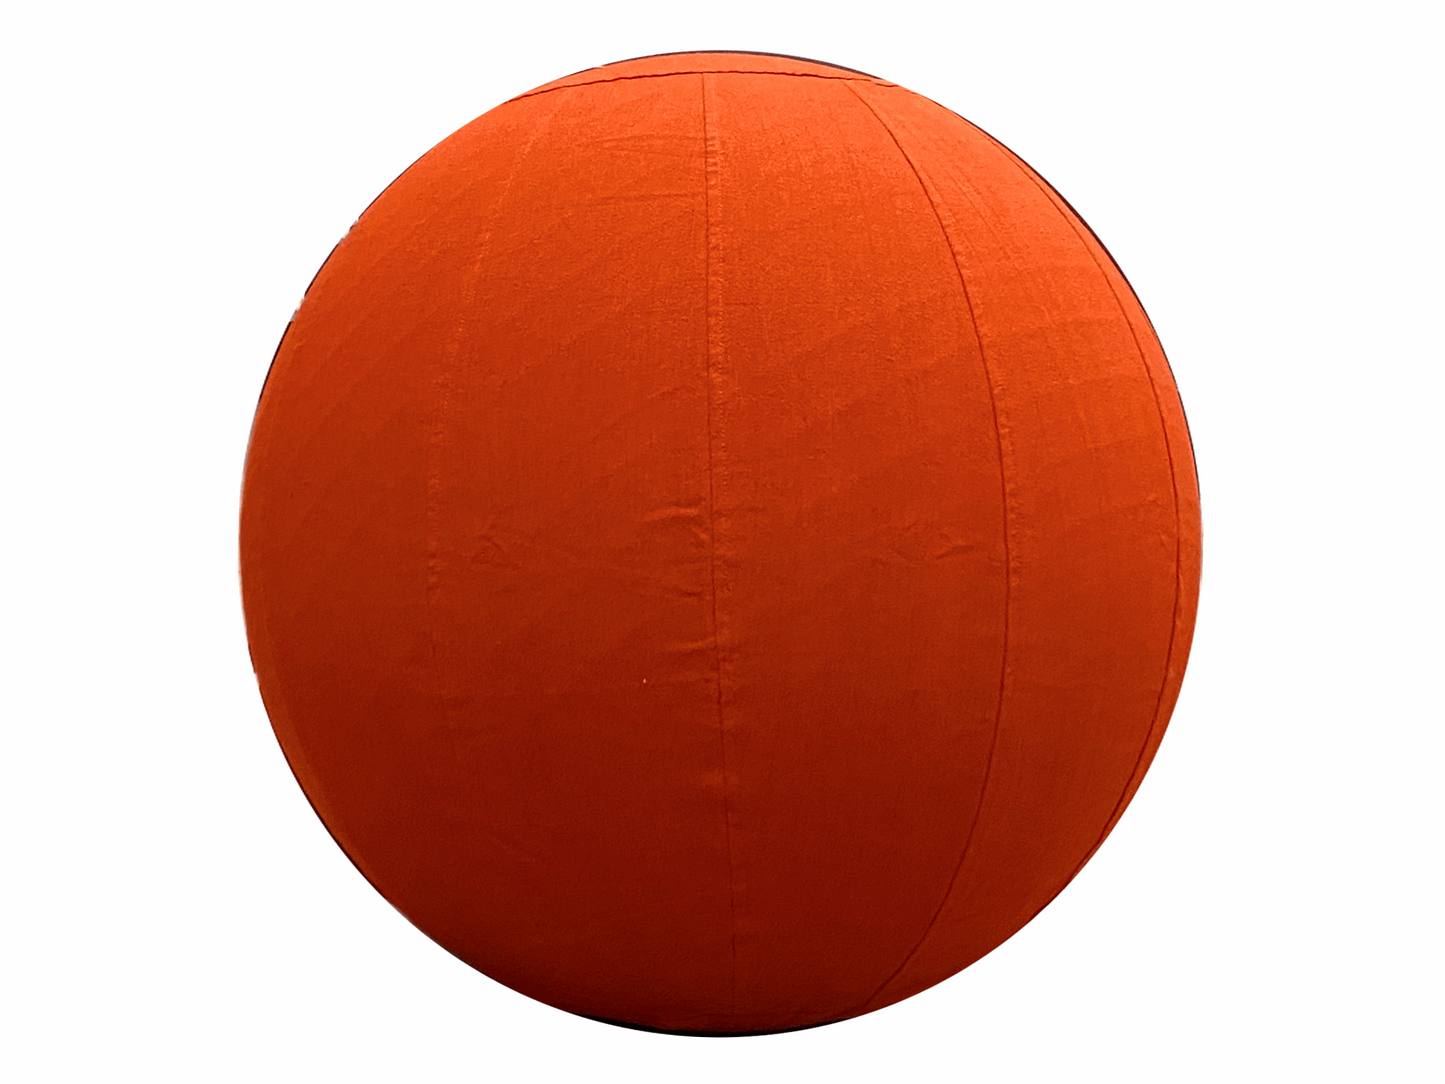 75cm Balance Ball / Yoga Ball Cover: Sedona